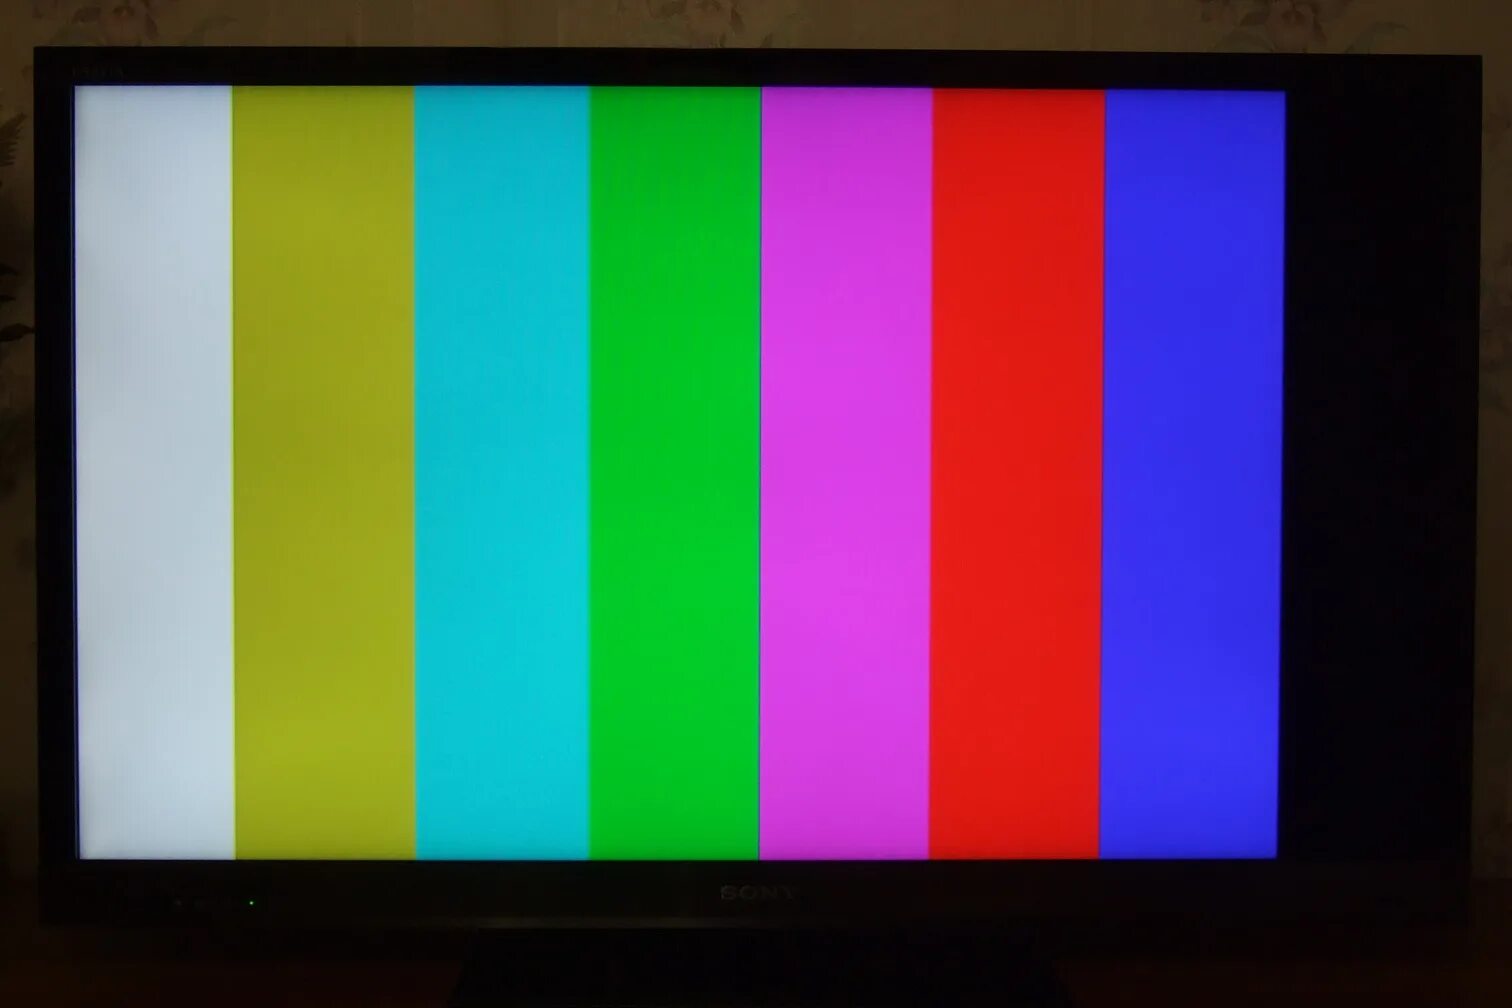 Экрана tv. Цветные полосы на экране телевизора. Разноцветные полоски на экране. Экран с цветными полосками. Разноцветные полосы на телевизоре.